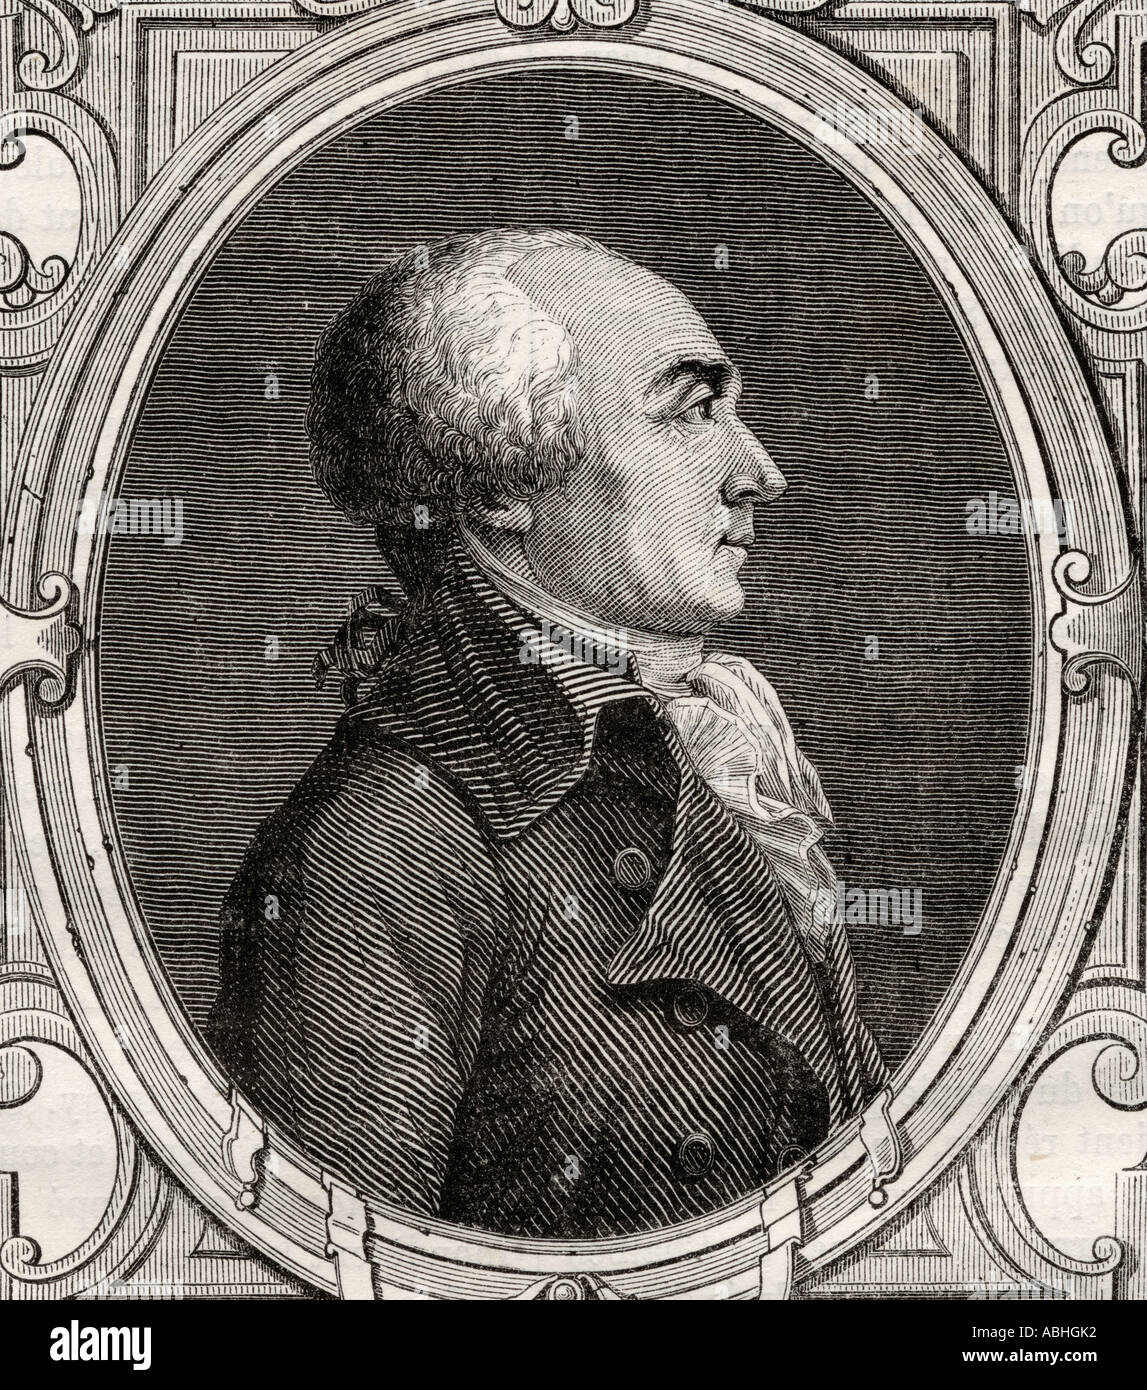 Jacques René Hébert, 1757 - 1794. Giornalista francese fondatore e redattore del giornale radicale estremo le Père Duchesne durante la Rivoluzione francese. Foto Stock